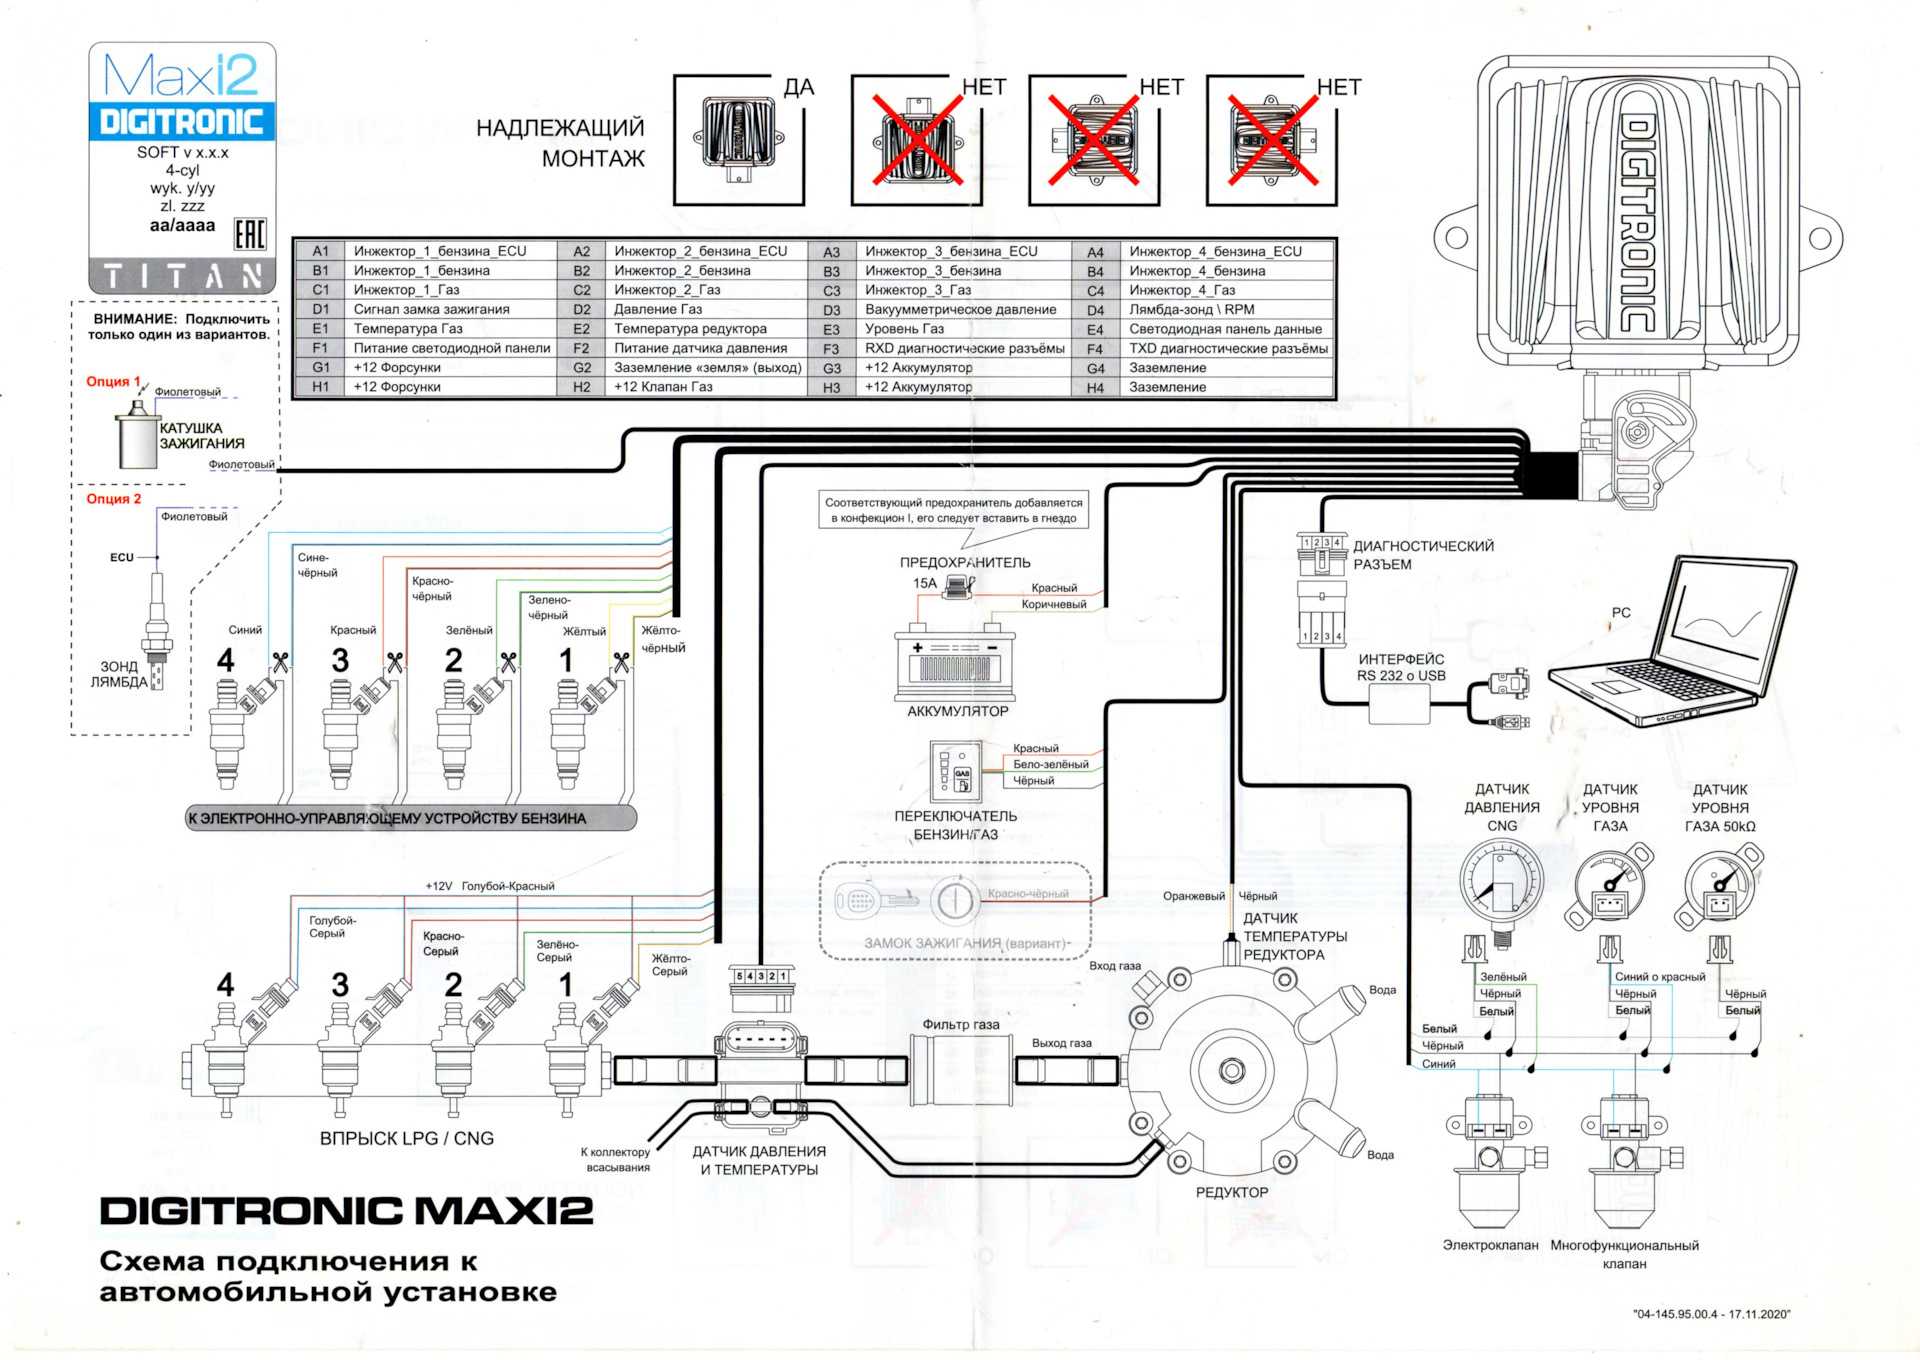 Digitronic maxi 2 для гбо 4 поколения: установка, подключение и настройка контроллера своими руками